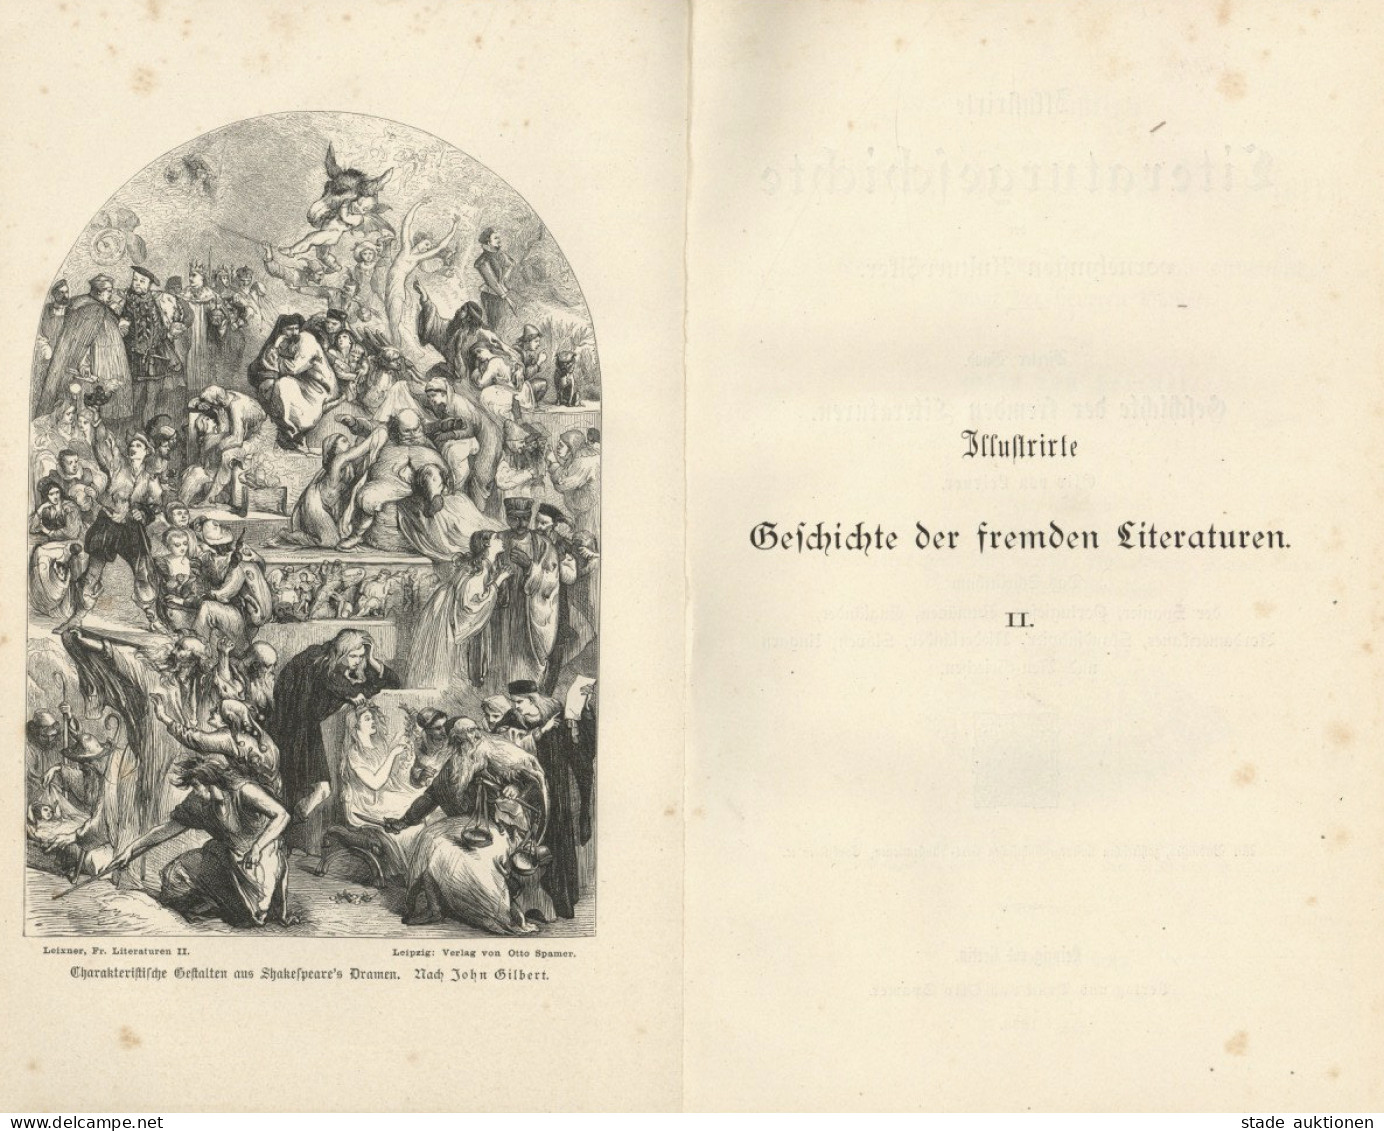 Buch Lot Mit 2 Büchern Illustrierte Geschichte Der Fremden Literaturen Band I Ud II Von Leixner, Otto 1883, Verlag Spame - Oude Boeken